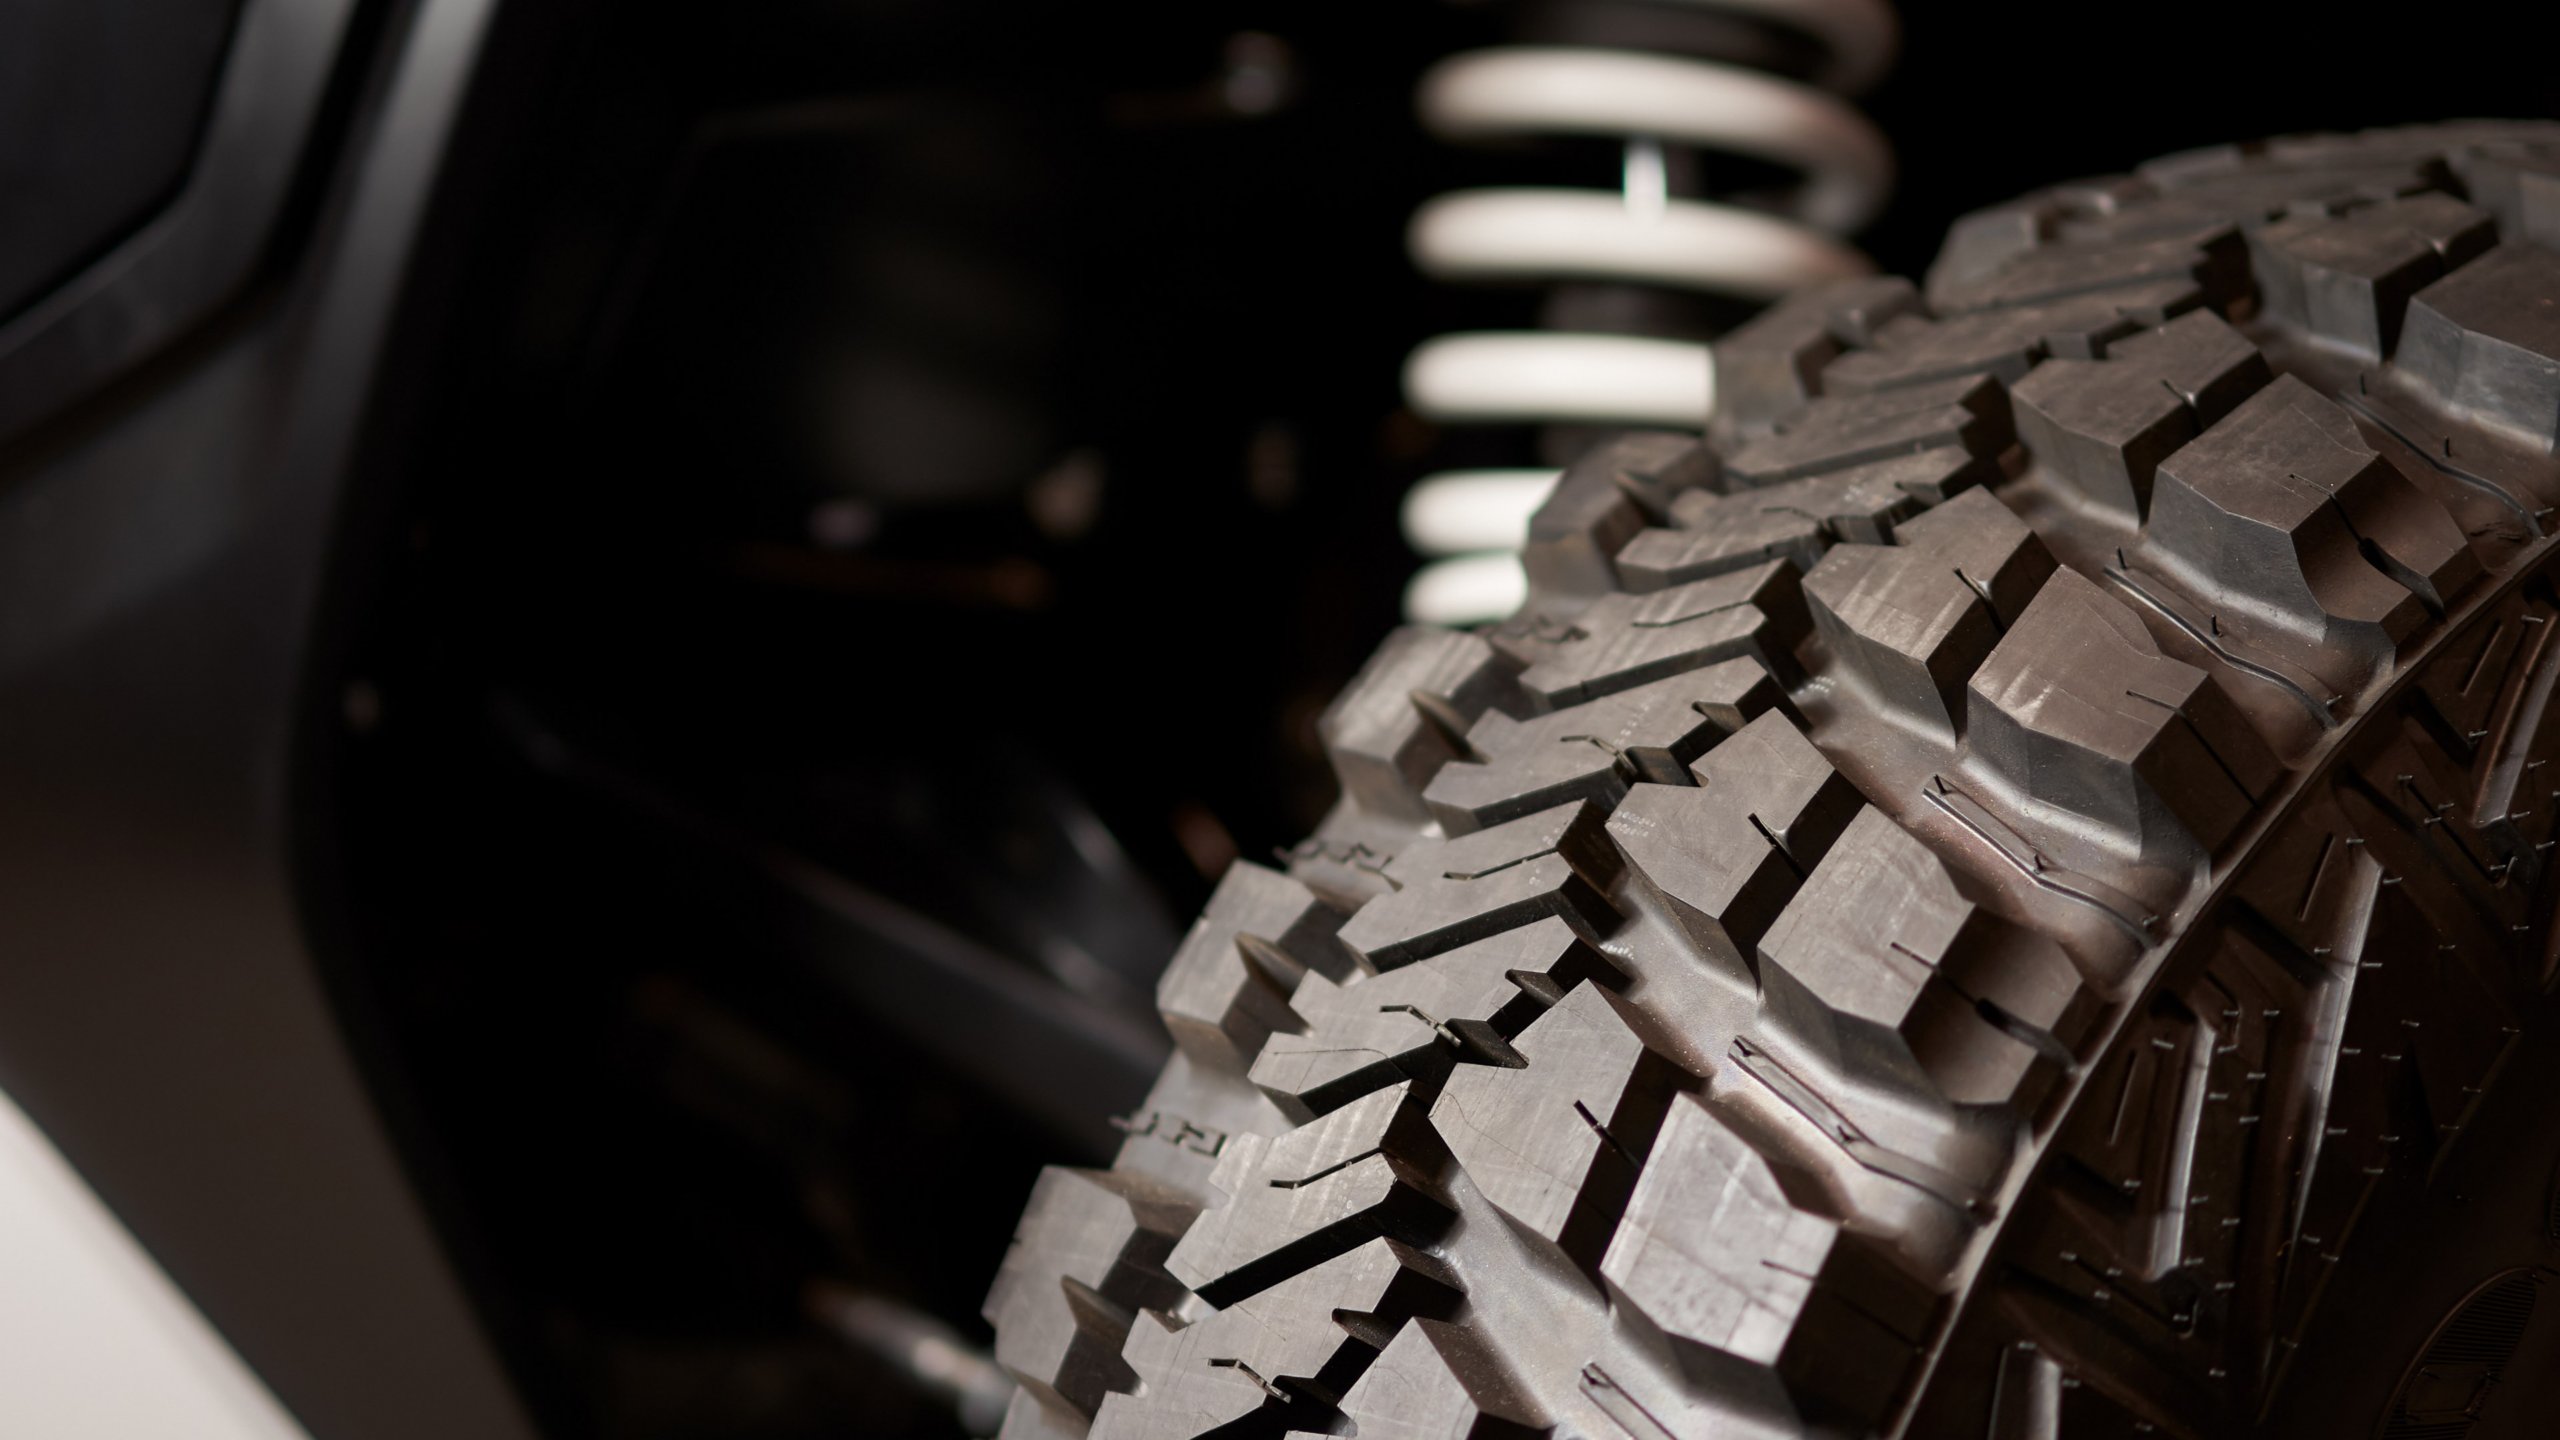 Desafios tecnológicos na fabricação de veículos e pneus